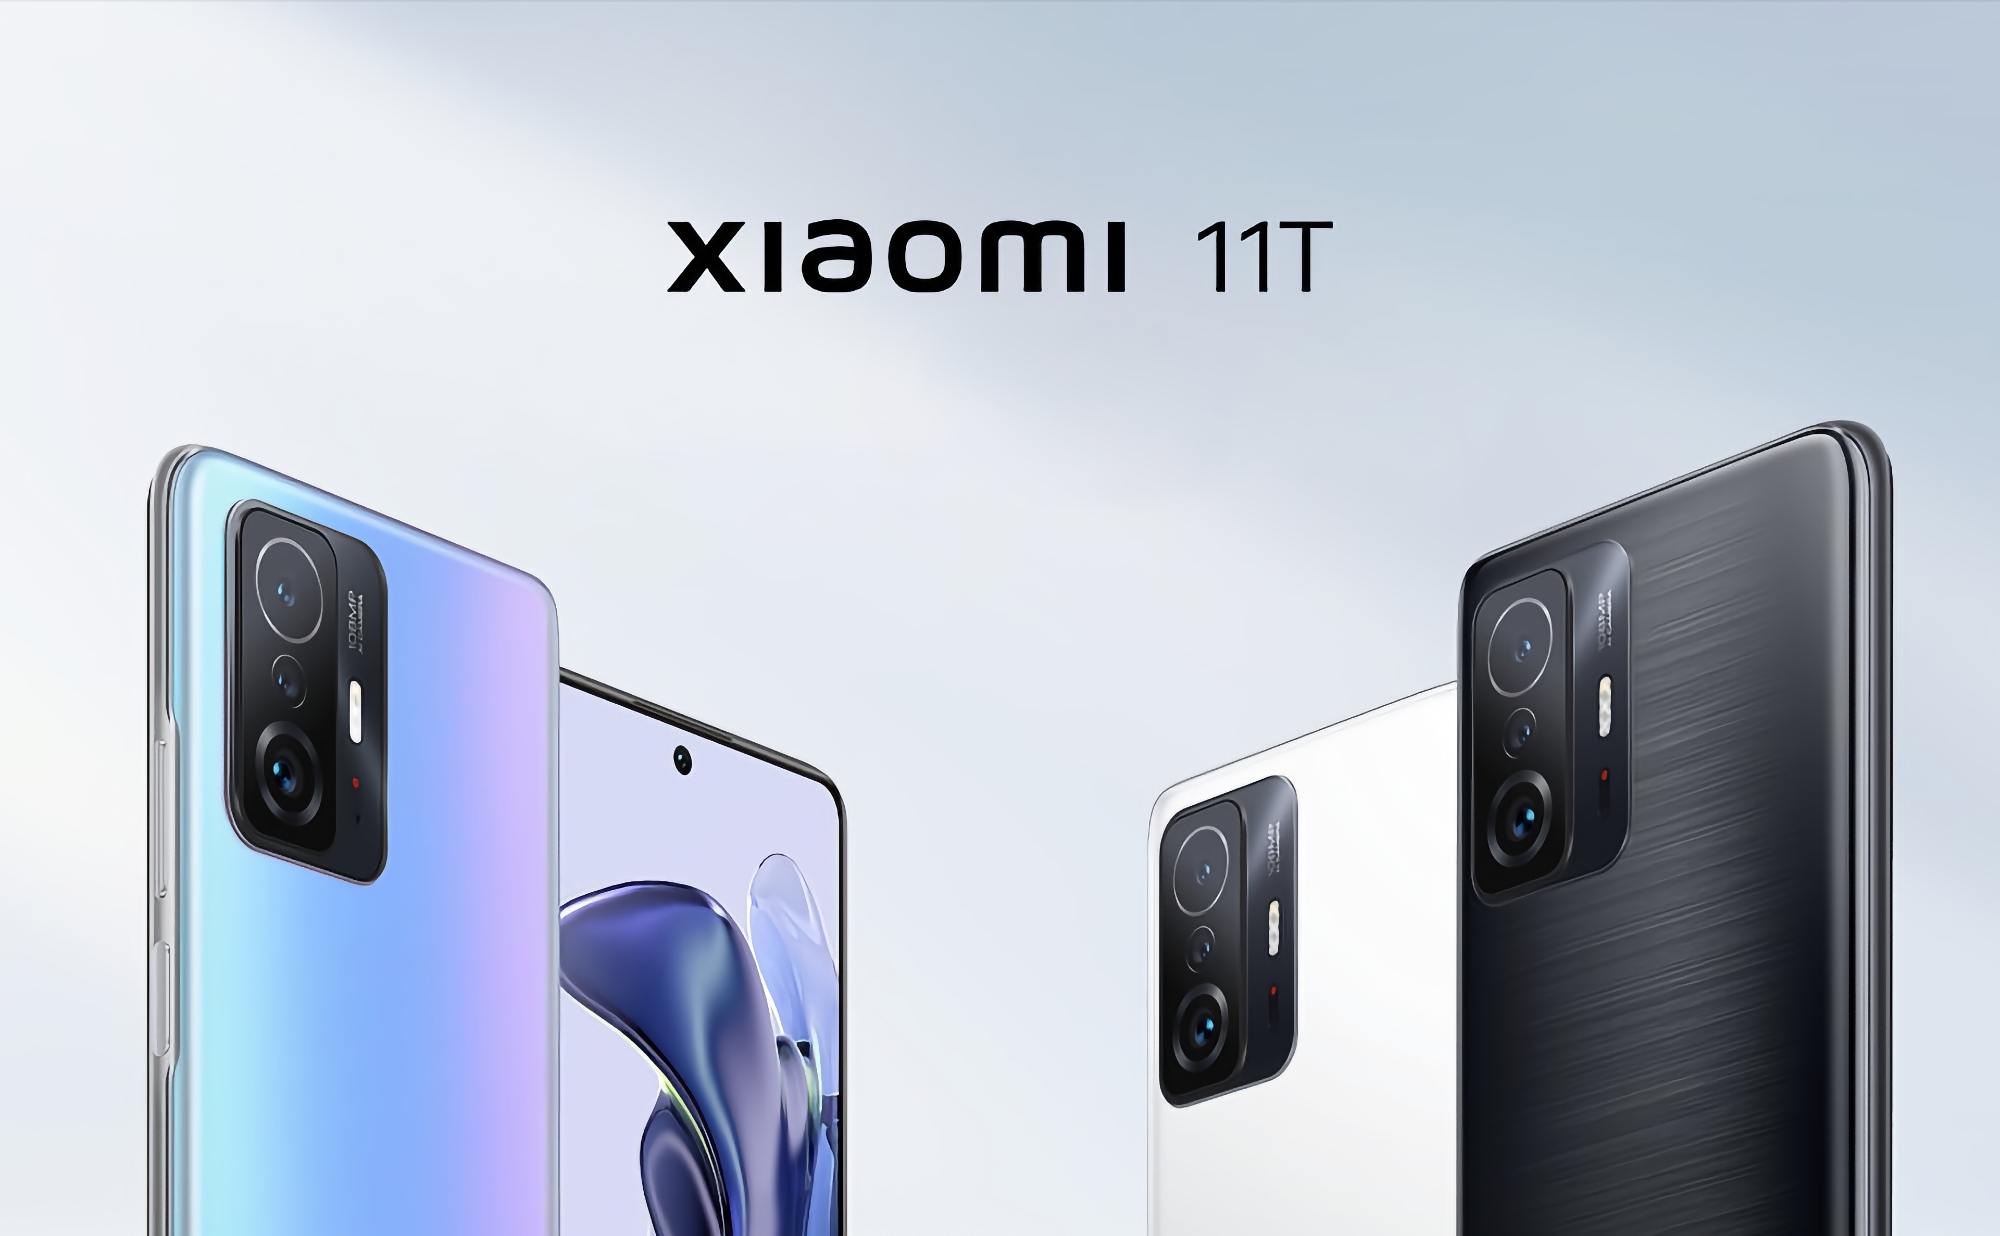 Review & comparison: Xiaomi 11T vs Xiaomi 11T Pro - Which is